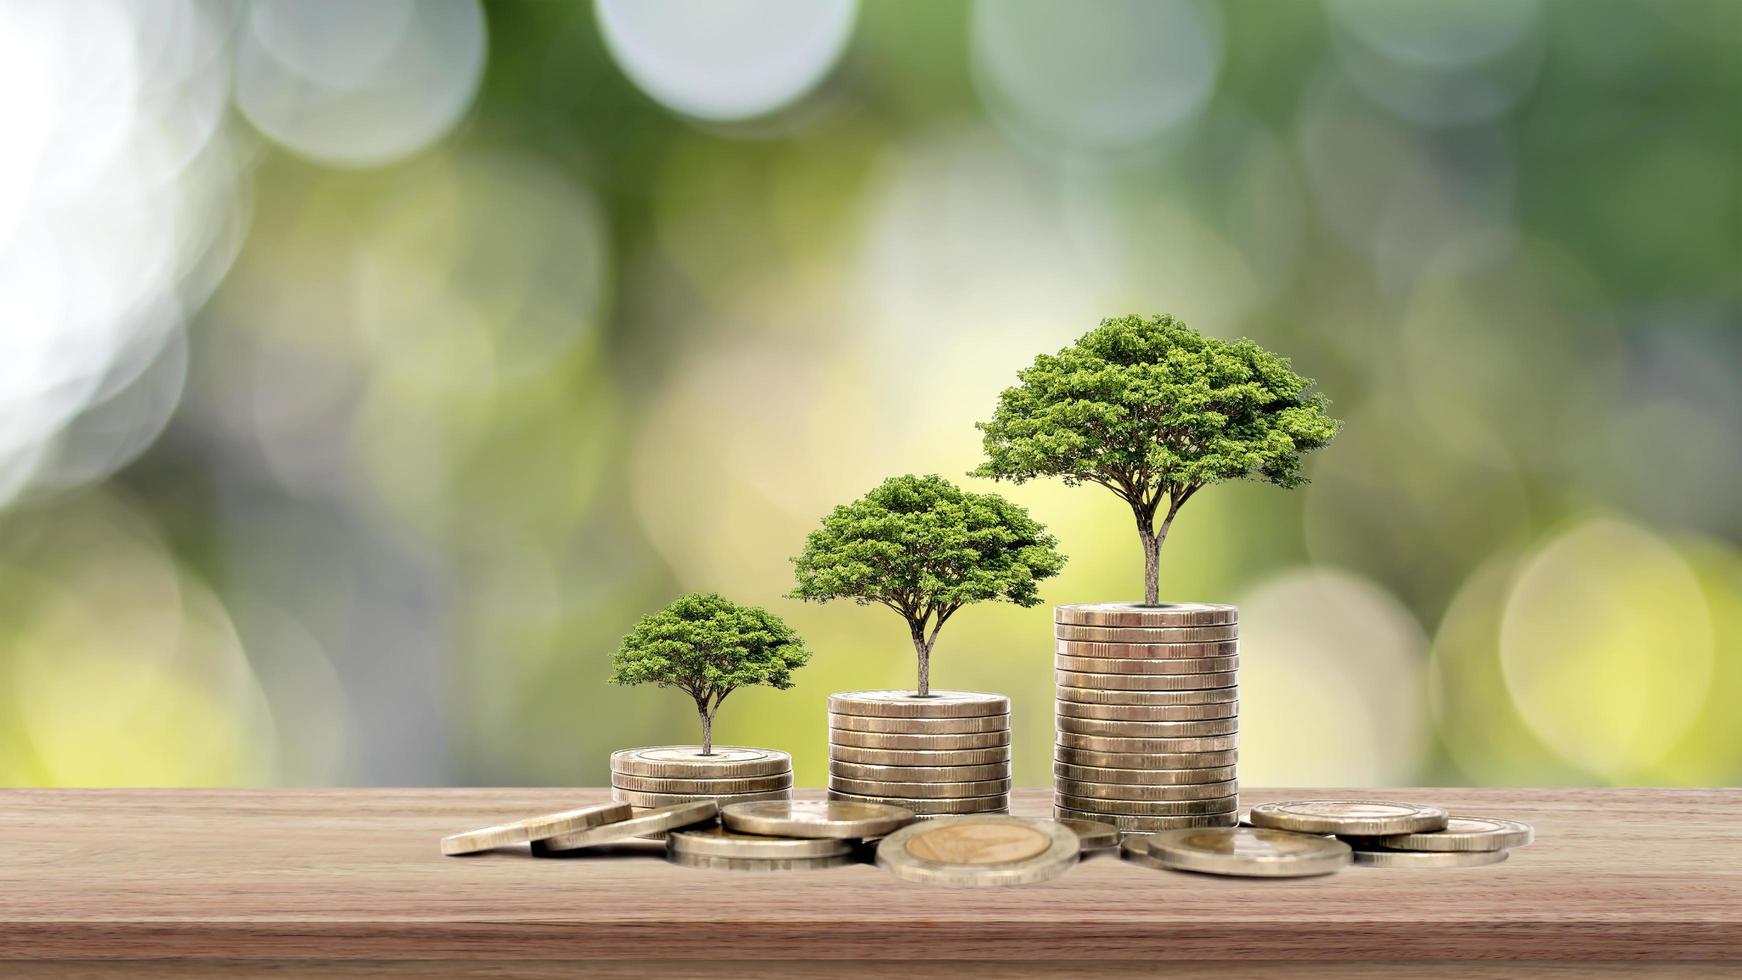 L'arbre pousse sur une pile d'argent sur une table en bois et fond naturel, le concept d'investissement financier et d'expansion économique photo